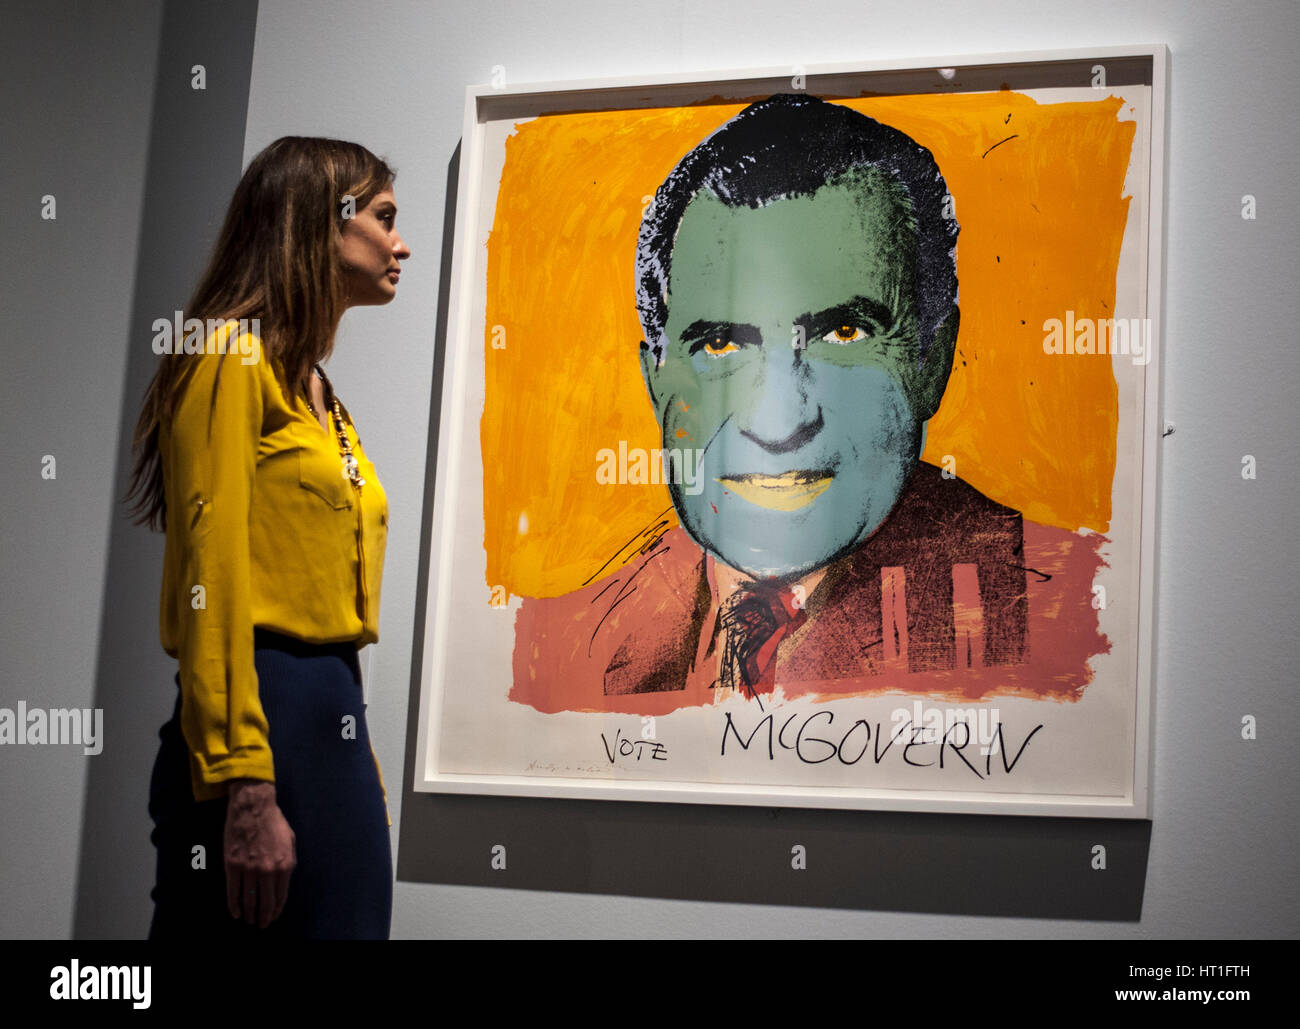 Un membro dello staff osserva Vota McGovern 1972 di Andy Warhol, una delle 200 stampe americane dagli anni '60 ai giorni nostri svelate al British Museum di Londra, durante una telefonata in vista dell'American Dream: Pop al lancio della mostra il 9 marzo Foto Stock